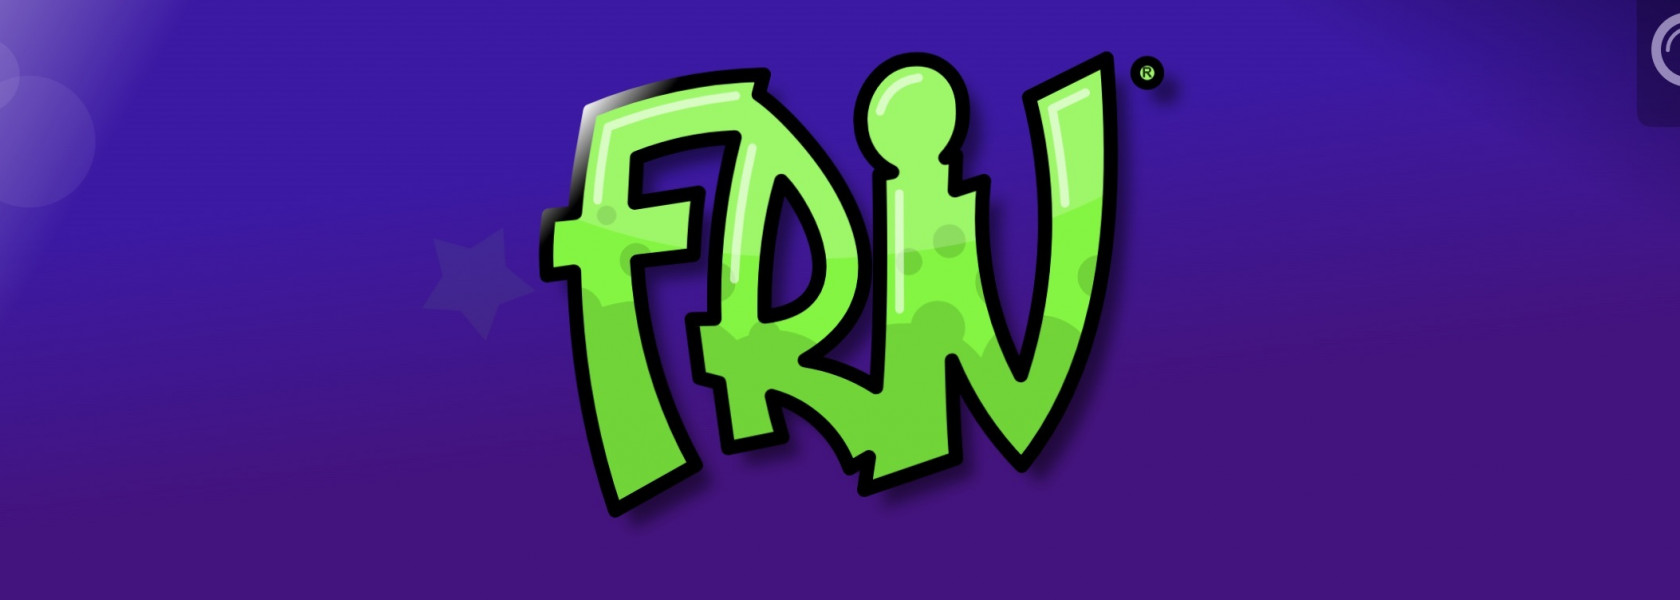 Hvad er Friv®? - Gratis Spil med Friv Online - lær hvordan